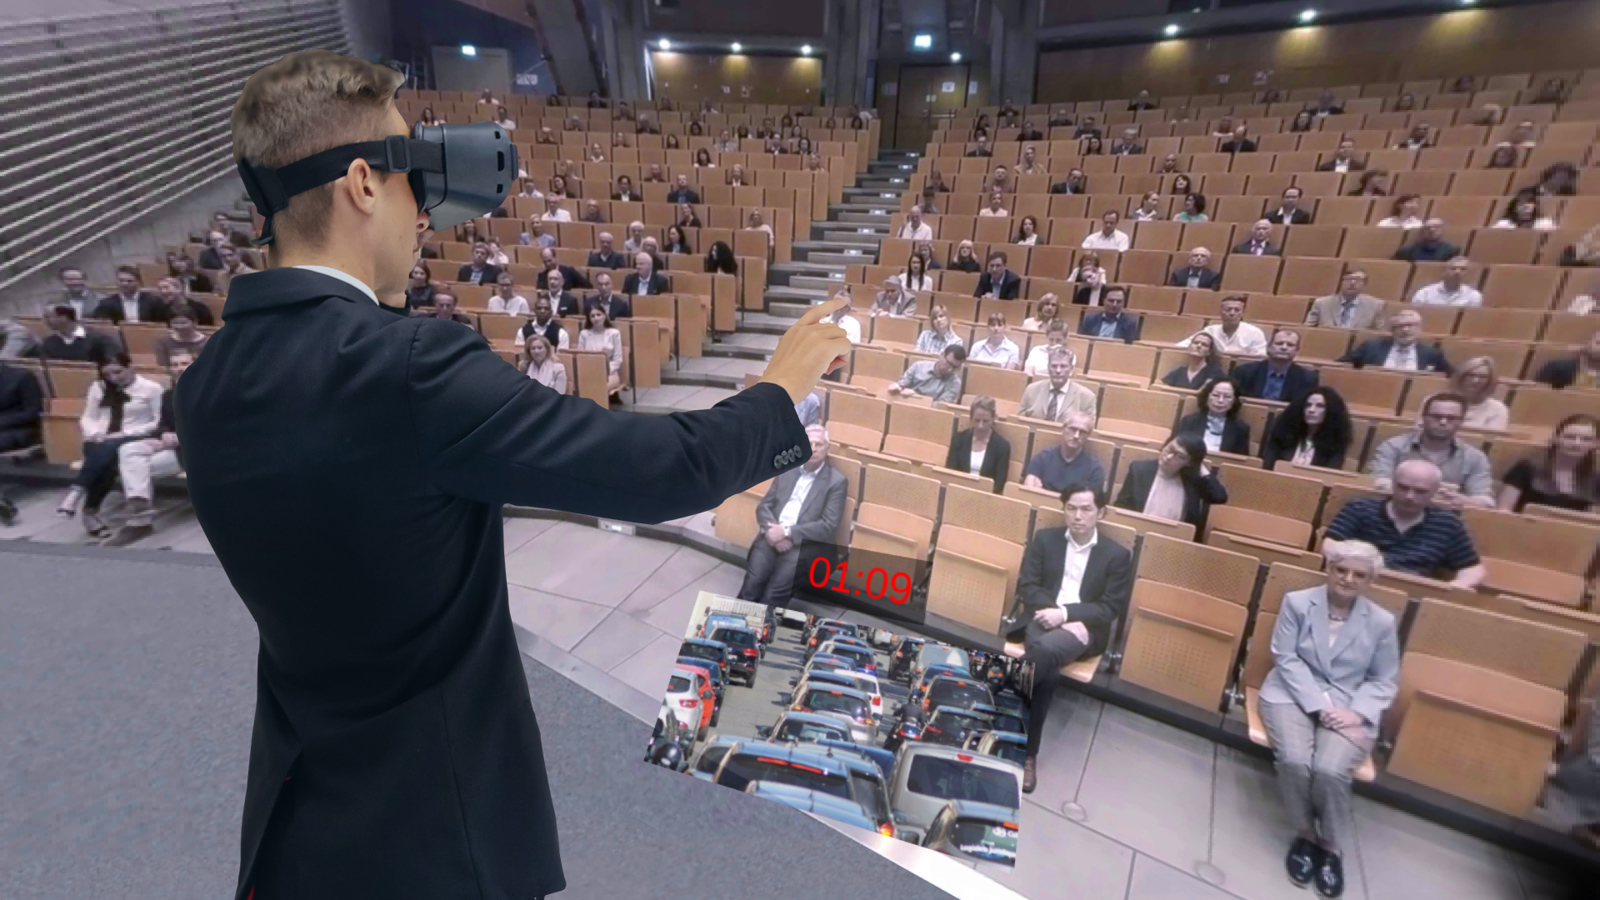 Souverän auftreten im virtuellen Audimax von VR EasySpeech